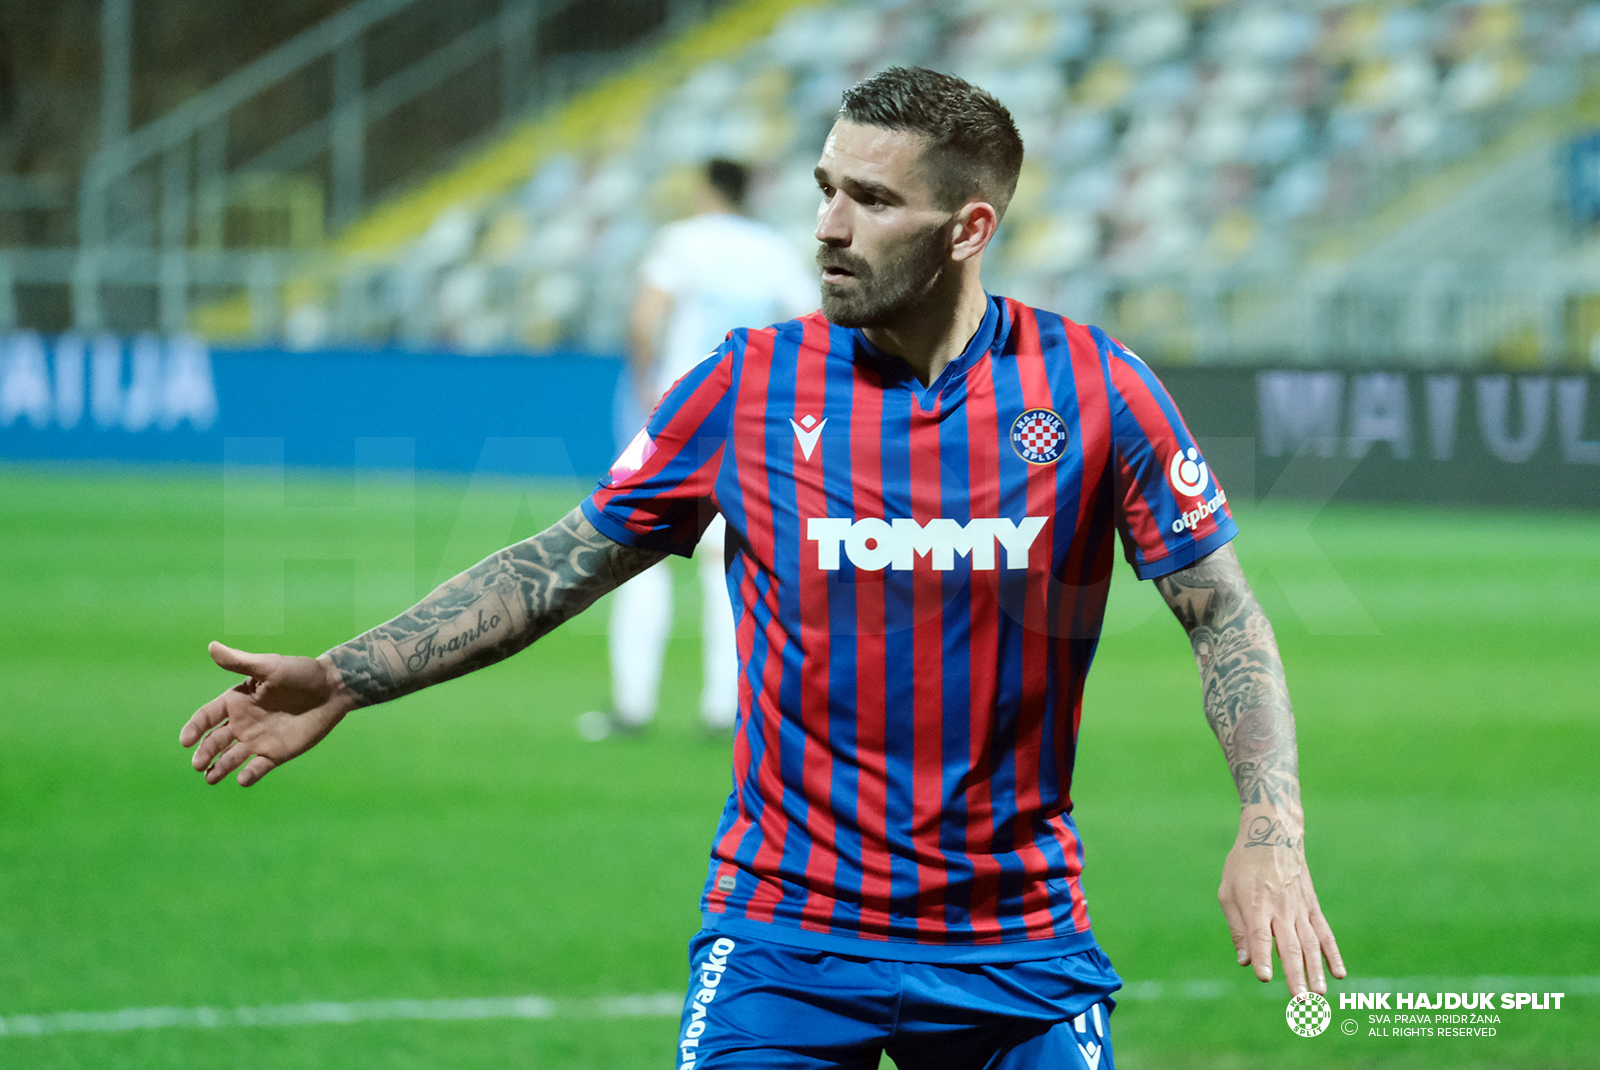 HNK Hajduk Split - HNK Rijeka Rezultati uživo, međusobni susreti i postave